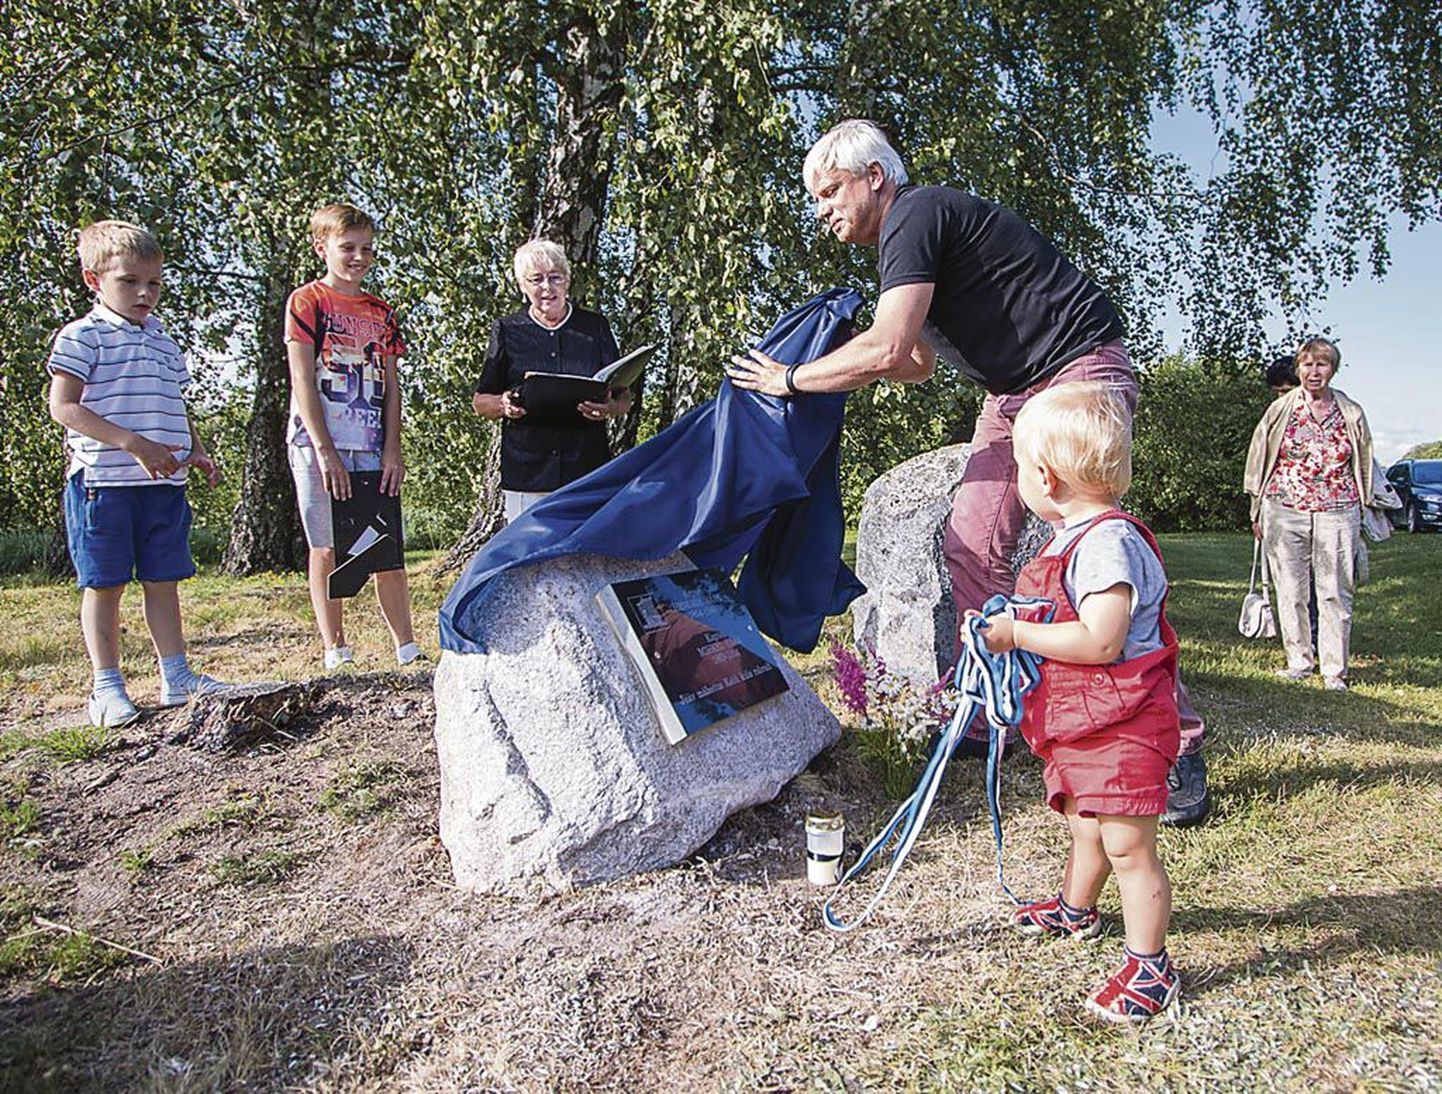 Pärnulane Ats Rääk eemaldas katte kivilt, millele on kantud tema sugupuust hargnenud kuulsate kaptenite Mihkel ja Hendrik Räägu nimi, kelle järgi sai nime ka Räägu küla.